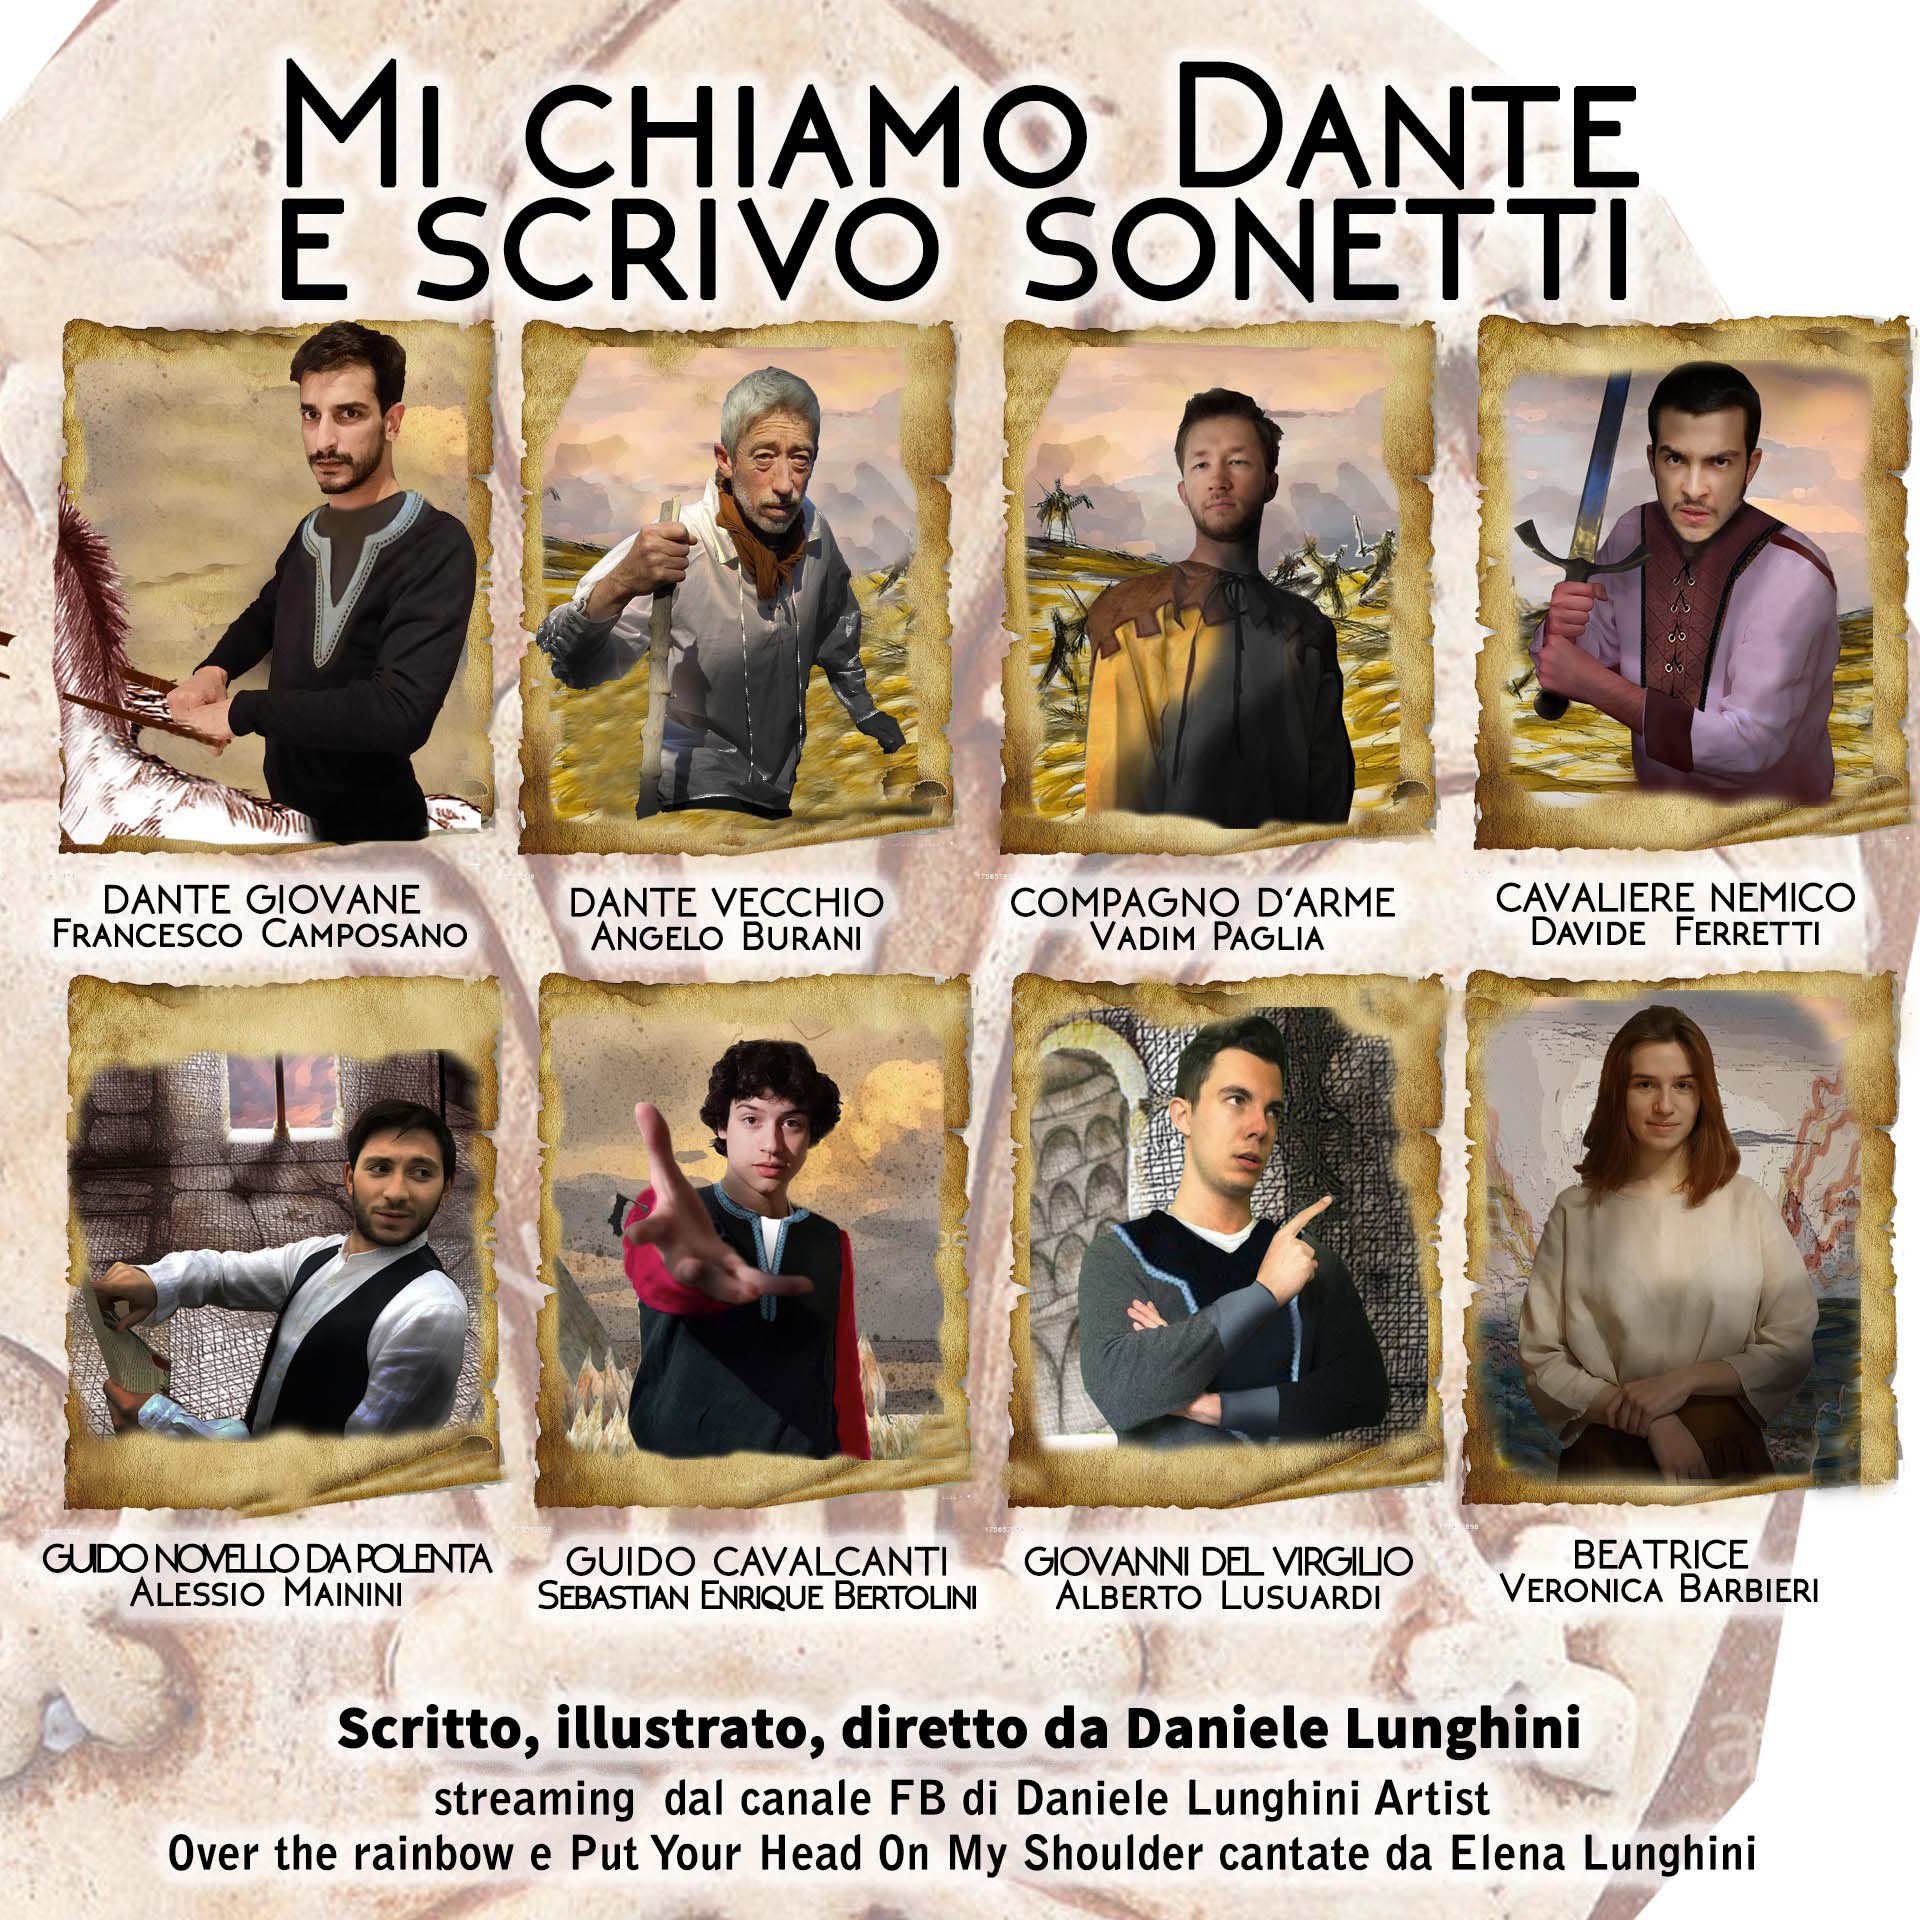 Dante2021 - Daniele Lunghini - Mi chiamo Dante e scrivo sonetti